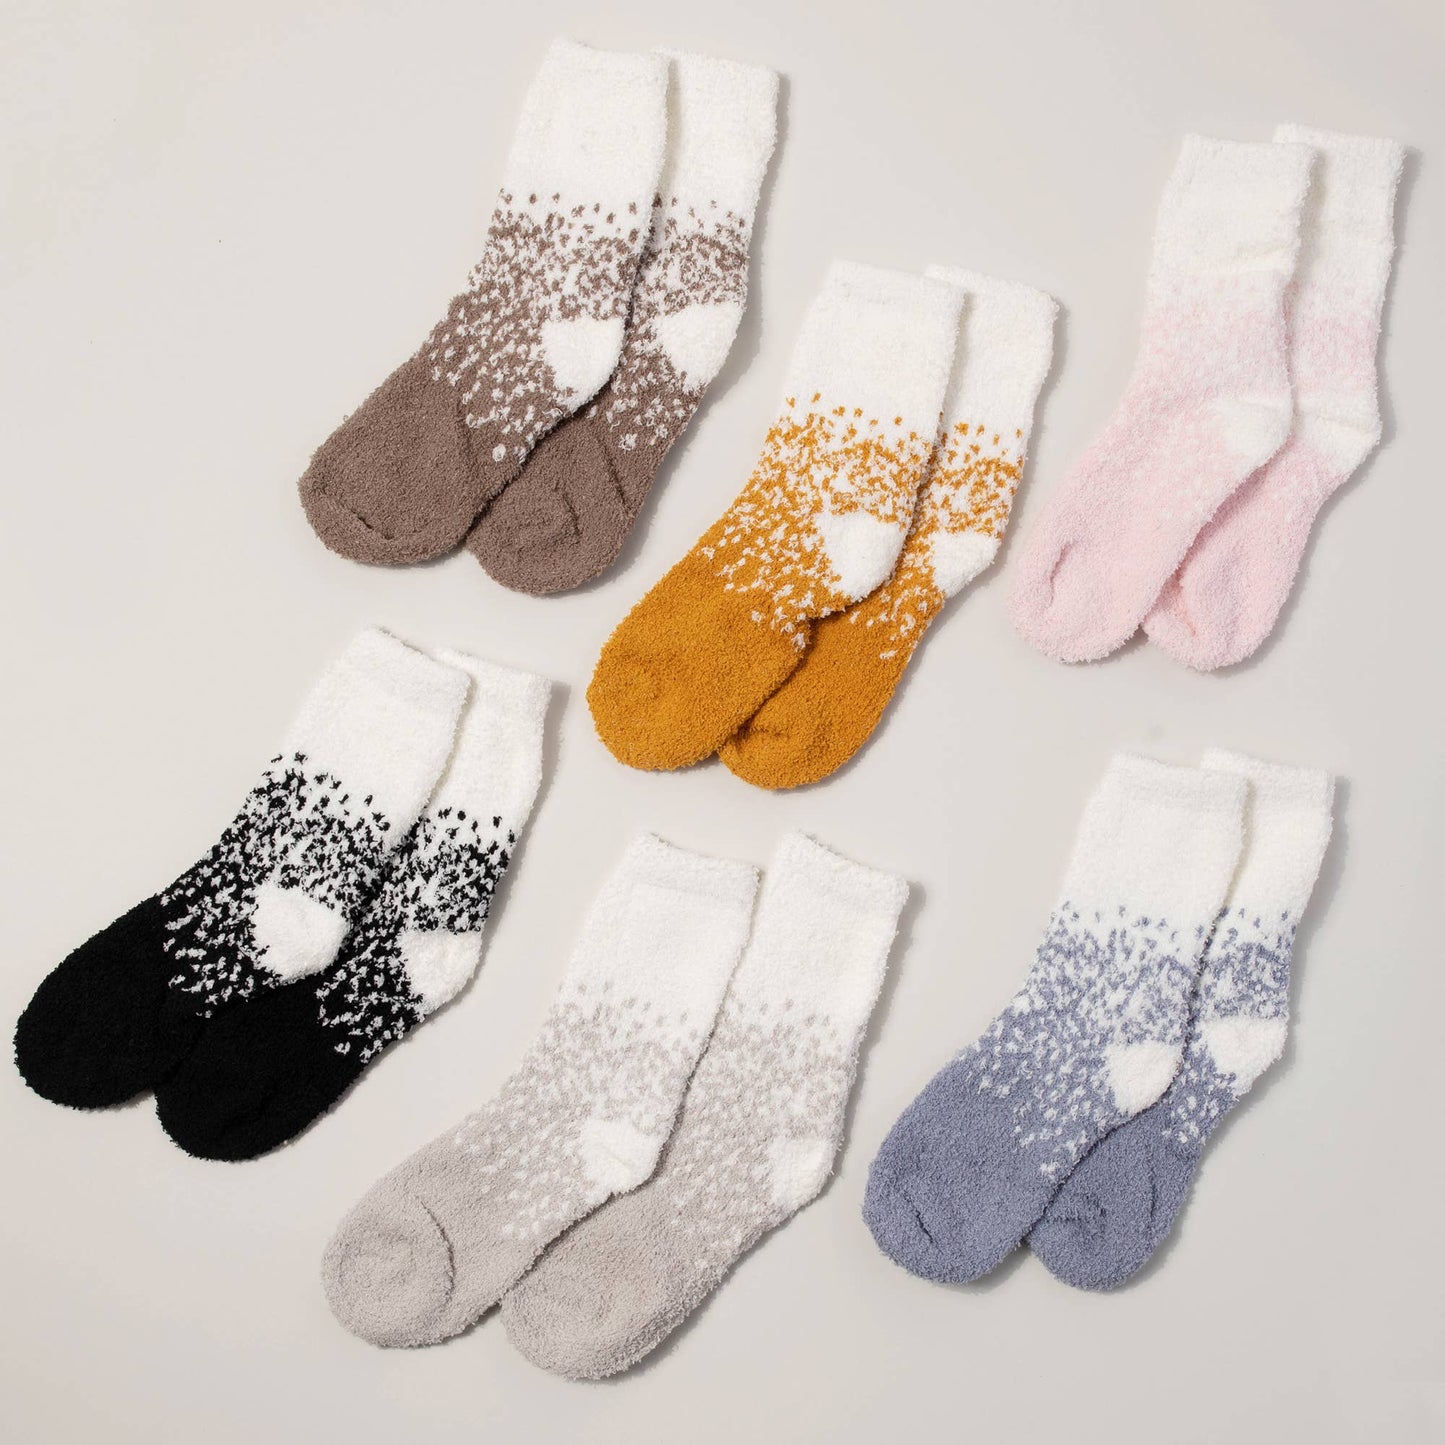 Speckle Print Sleep Socks